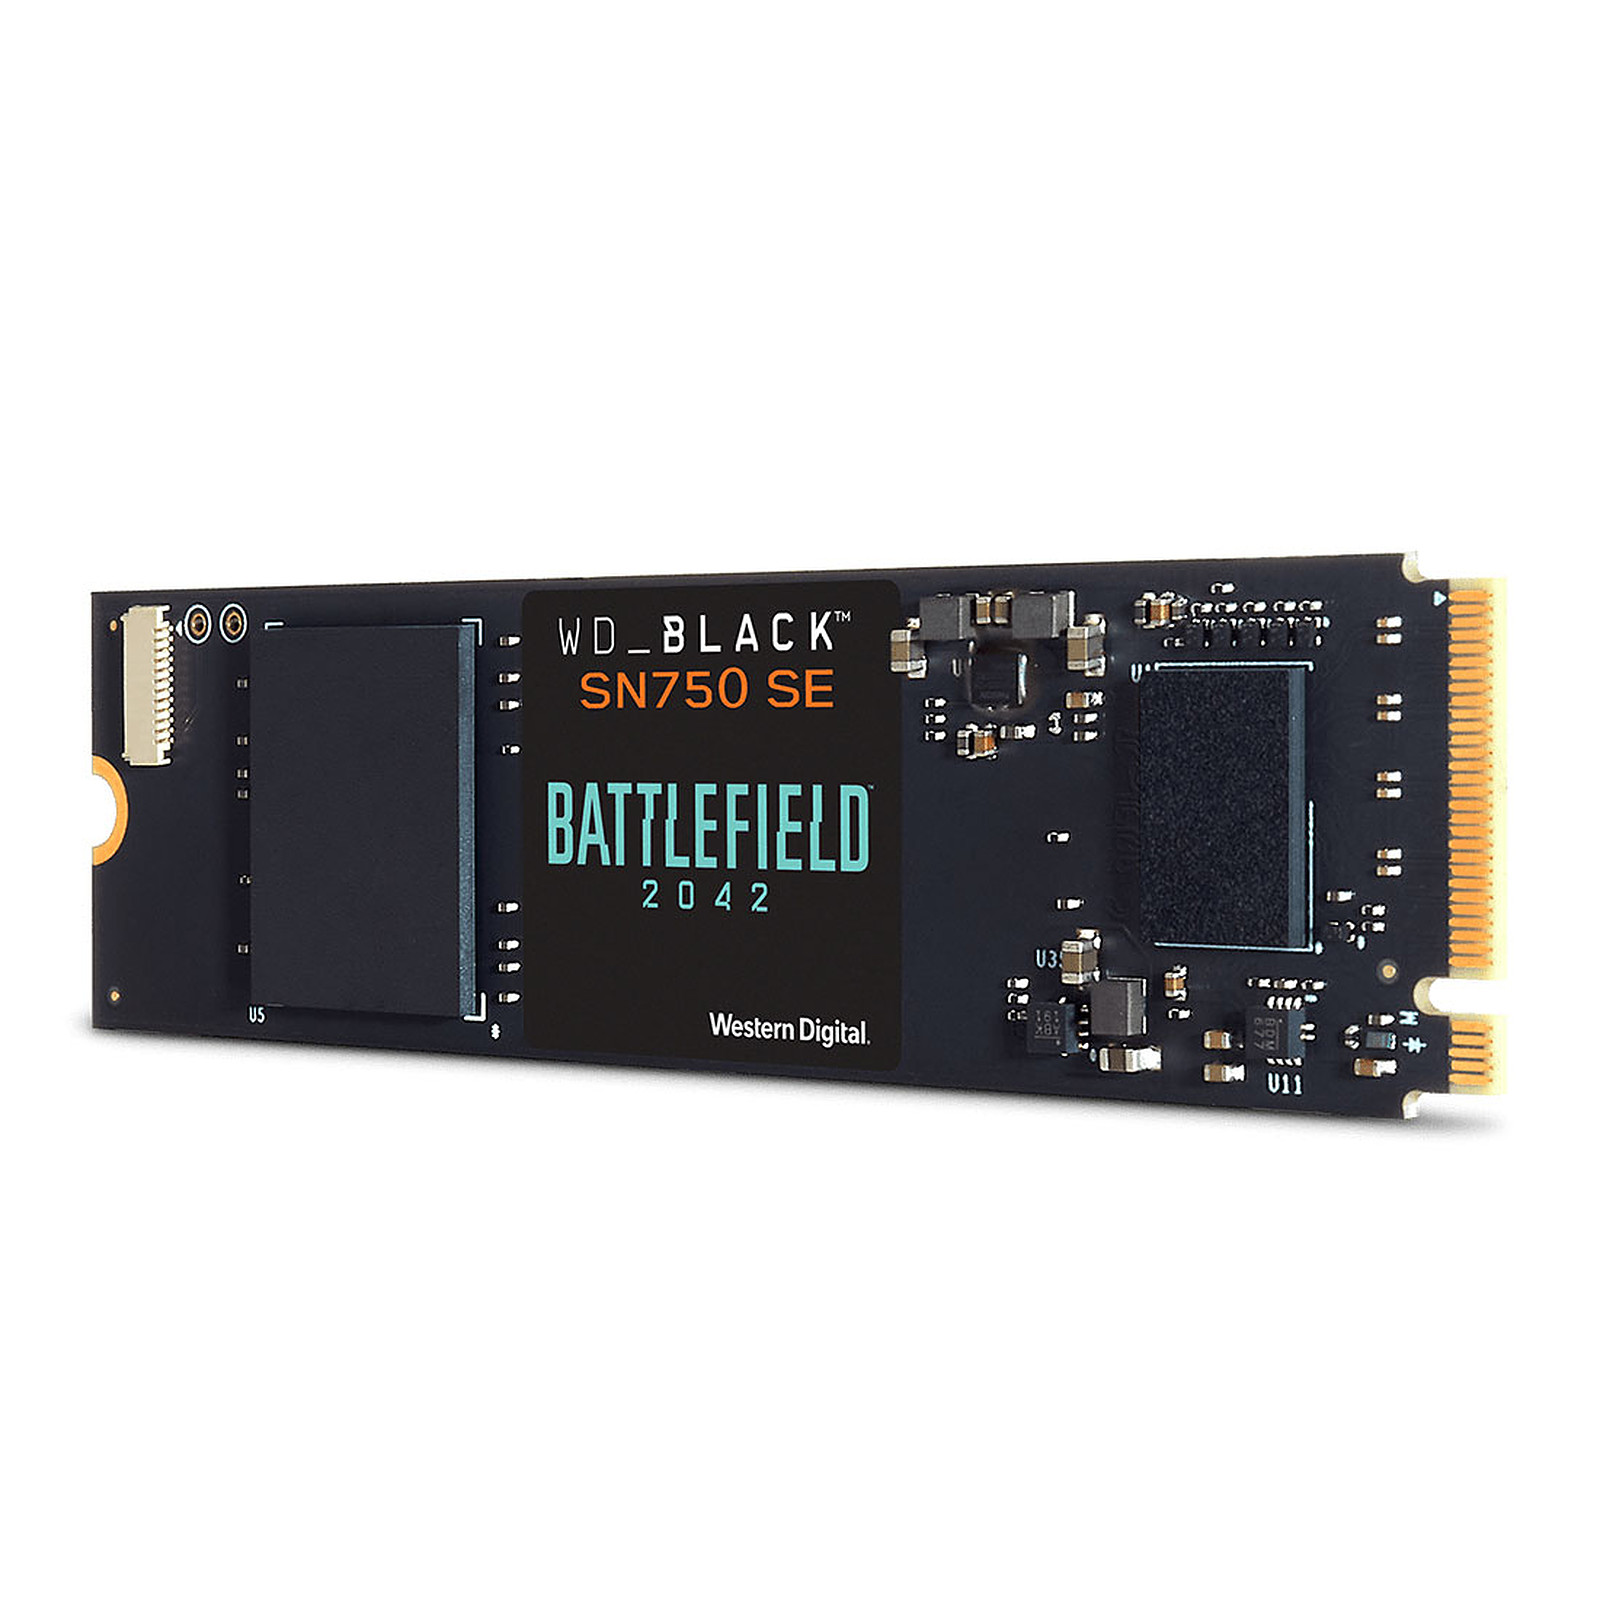 Western Digital SSD WD Black SN750 SE 1 To Battlefield 2042 - Disque SSD WD_Black